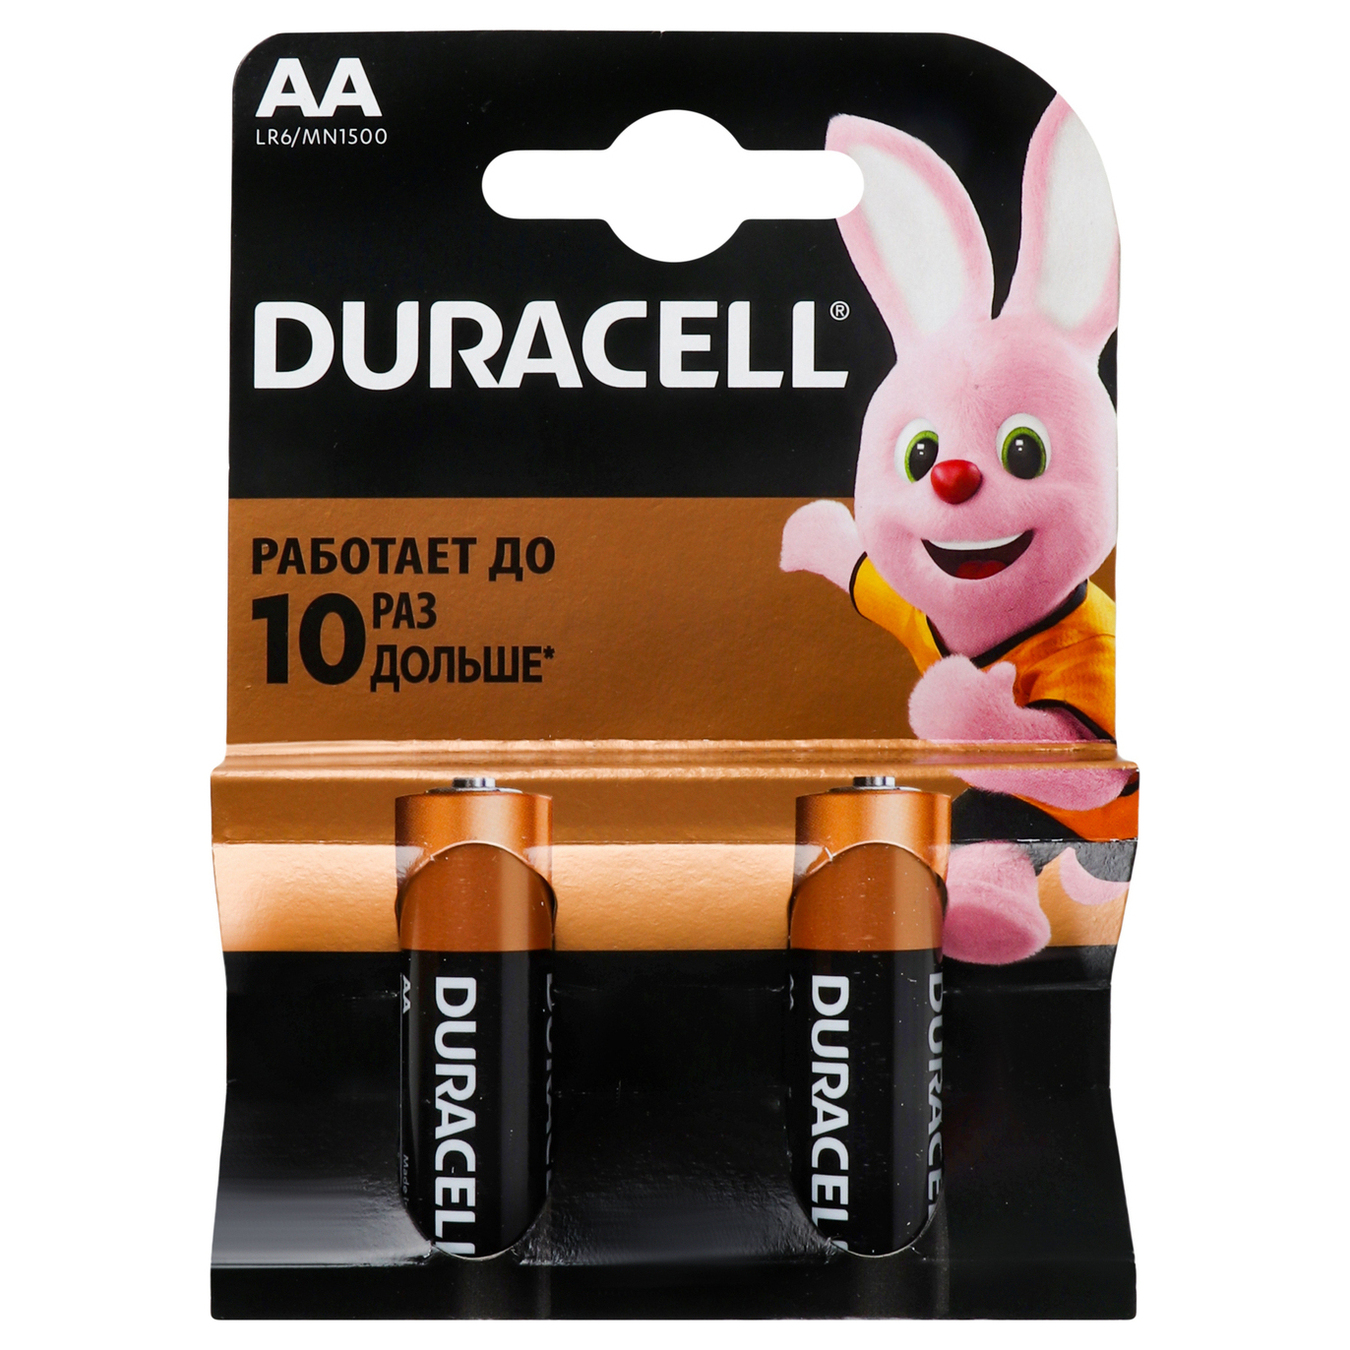 Duracell AA alkaline batteries 2 pcs